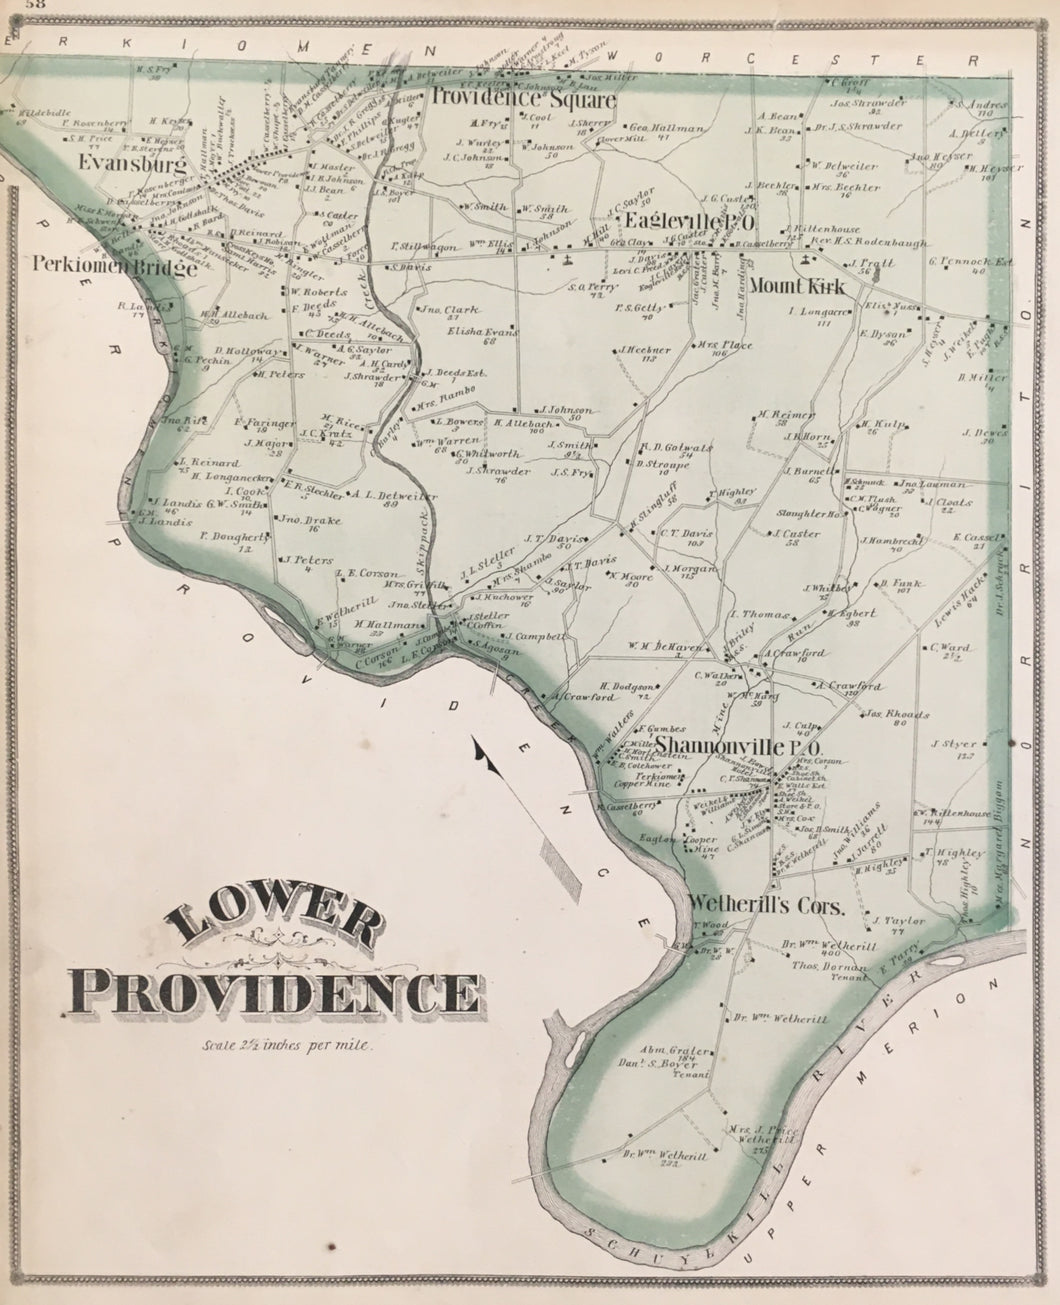 Scott, J.D.  “Lower Providence